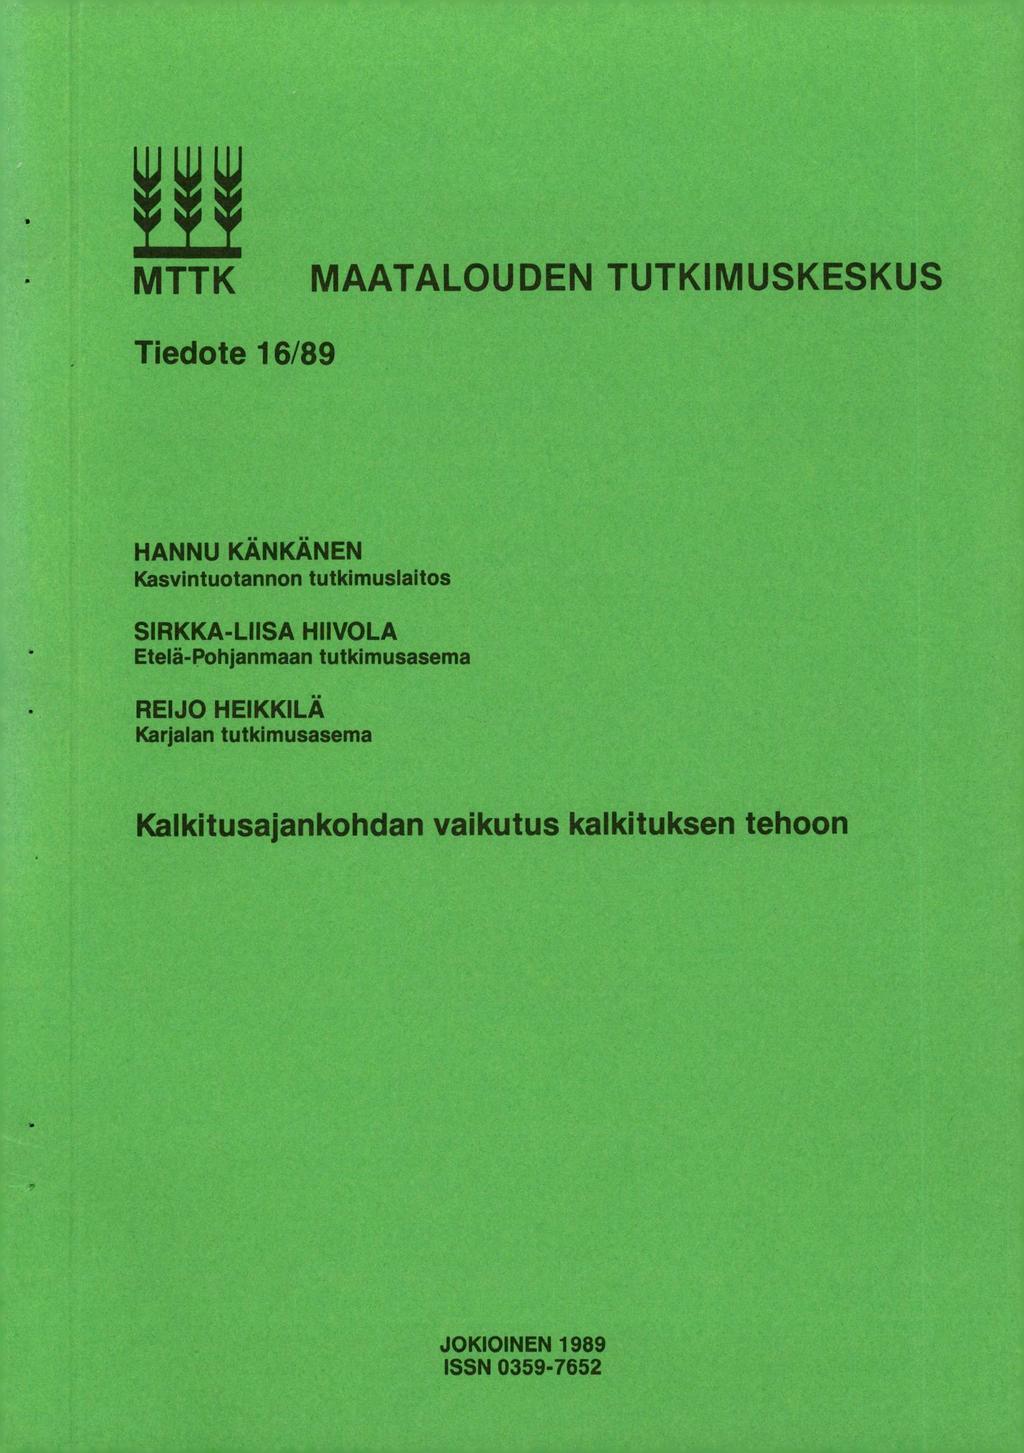 MTTK MAATALOUDEN TUTKIMUSKESKUS Tiedote 16/89 HANNU KÄNKÄNEN Kasvintuotannon tutkimuslaitos SIRKKA-LIISA HIIVOLA